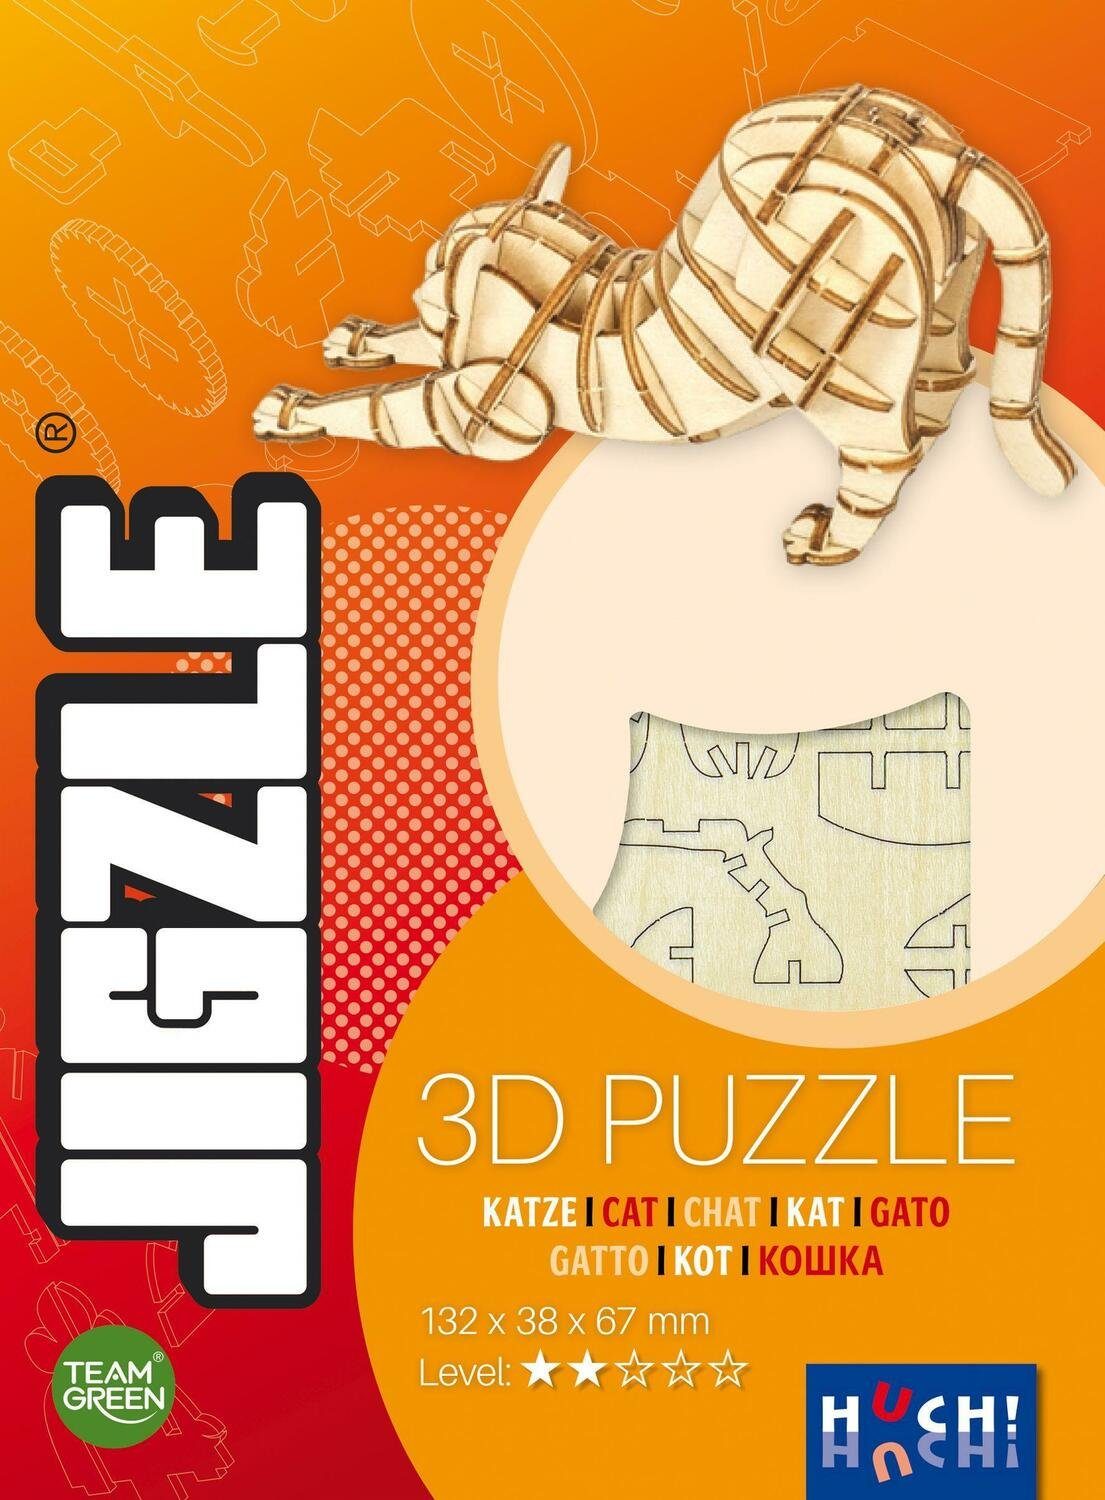 Huch! Hutter Puzzle JIGZLE - Katze (Puzzle), Puzzleteile